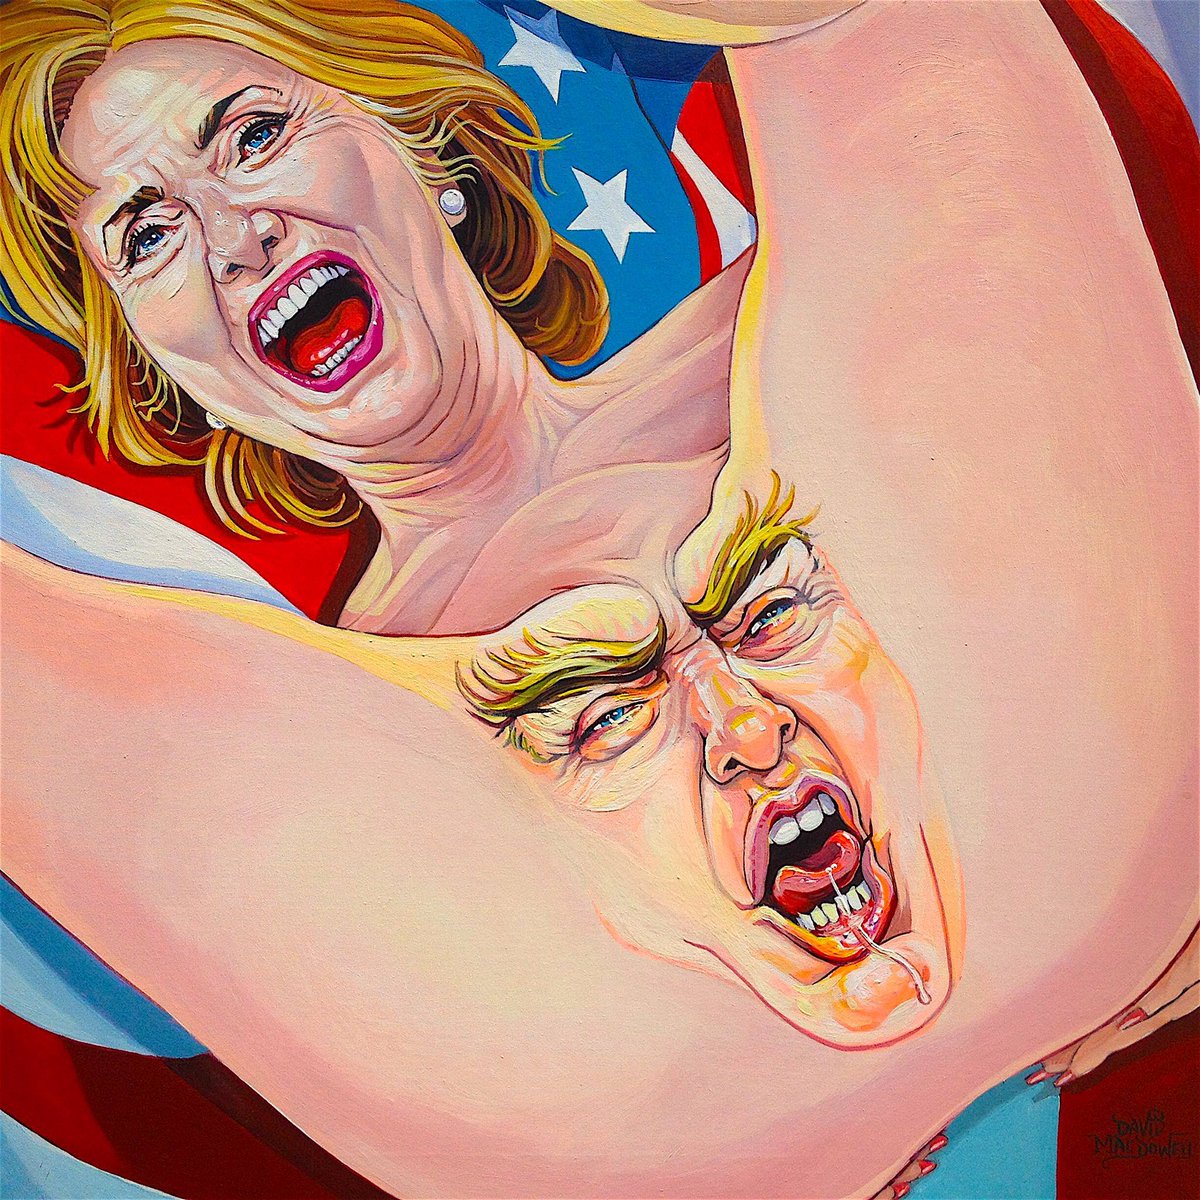 Хиллари клинтон порно комикс фото 48